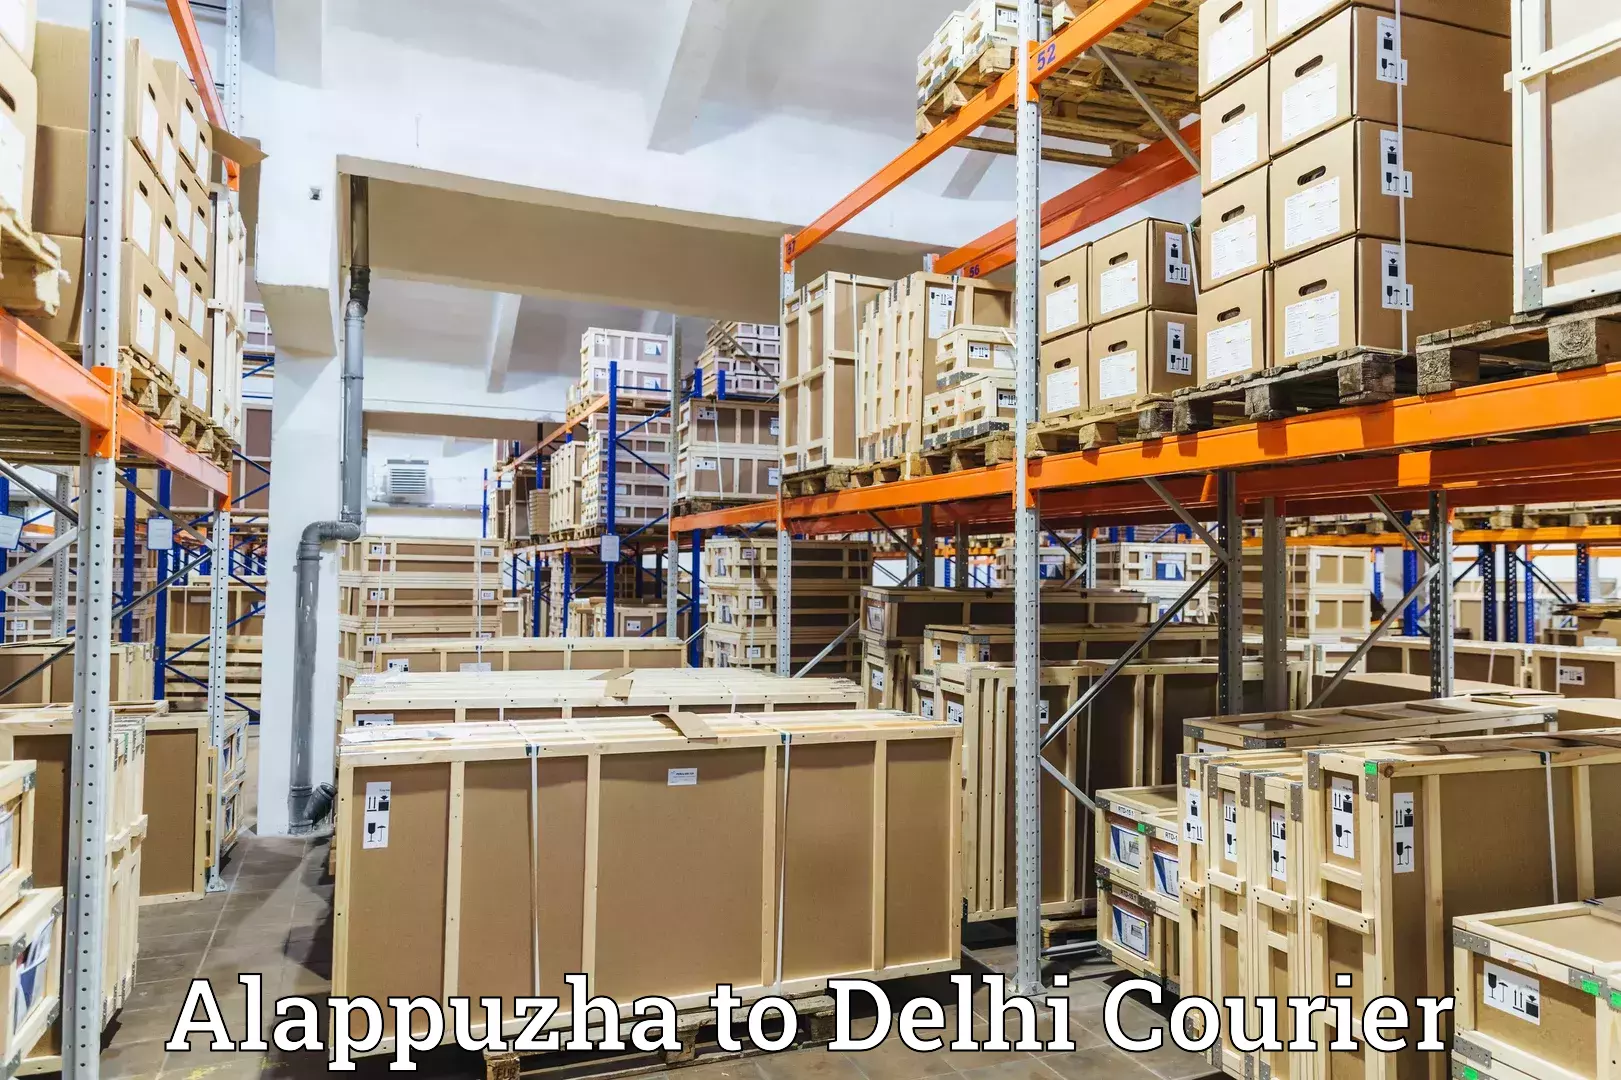 Door-to-door freight service Alappuzha to IIT Delhi